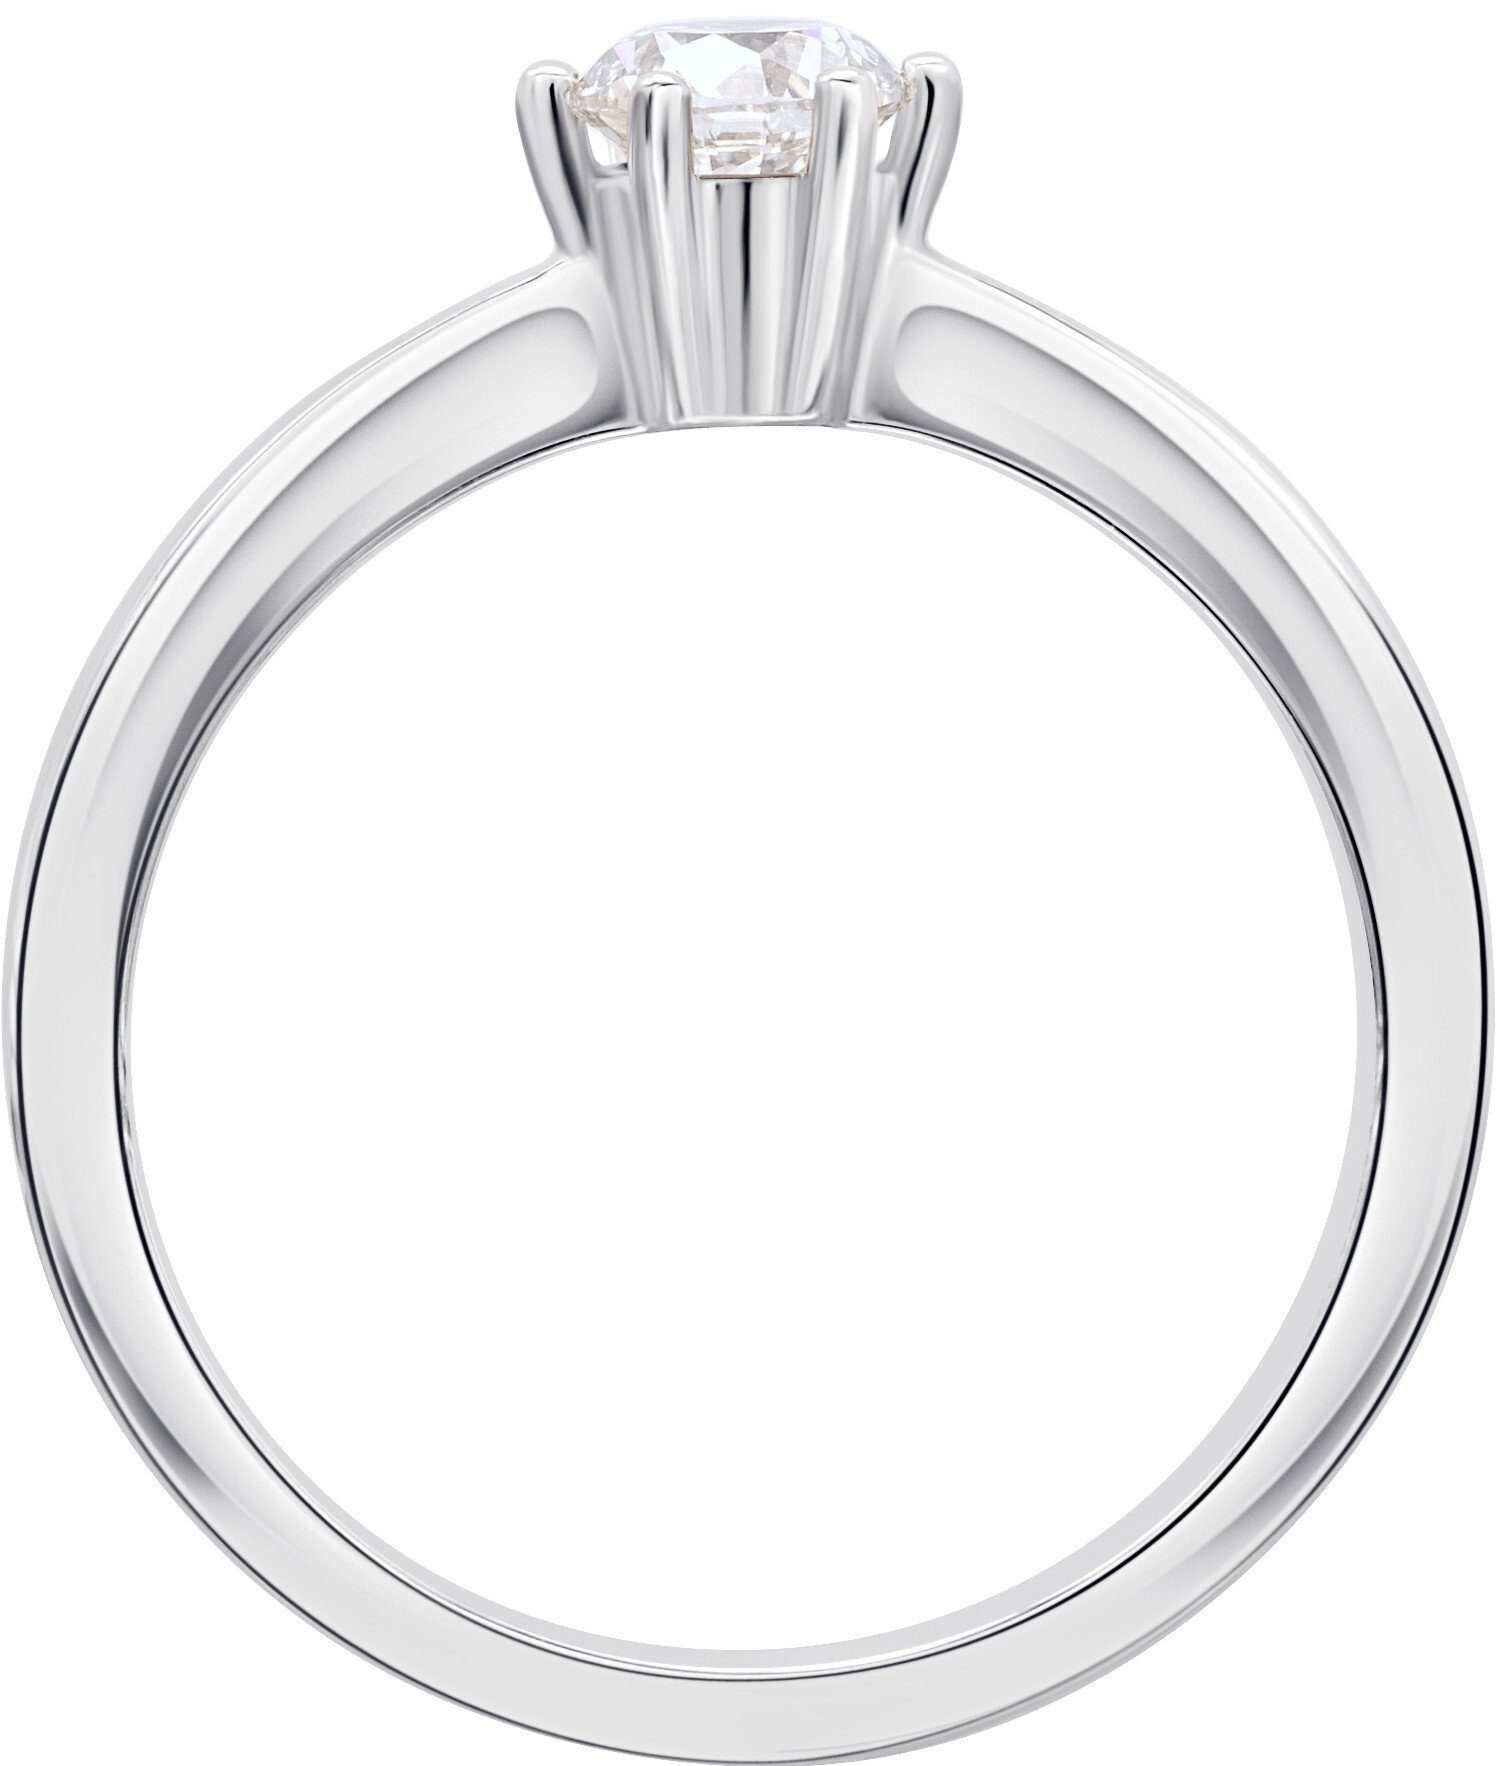 ONE ELEMENT Diamantring 0.1 ct aus Diamant Gold 750 Brillant Weißgold, Ring Damen Schmuck